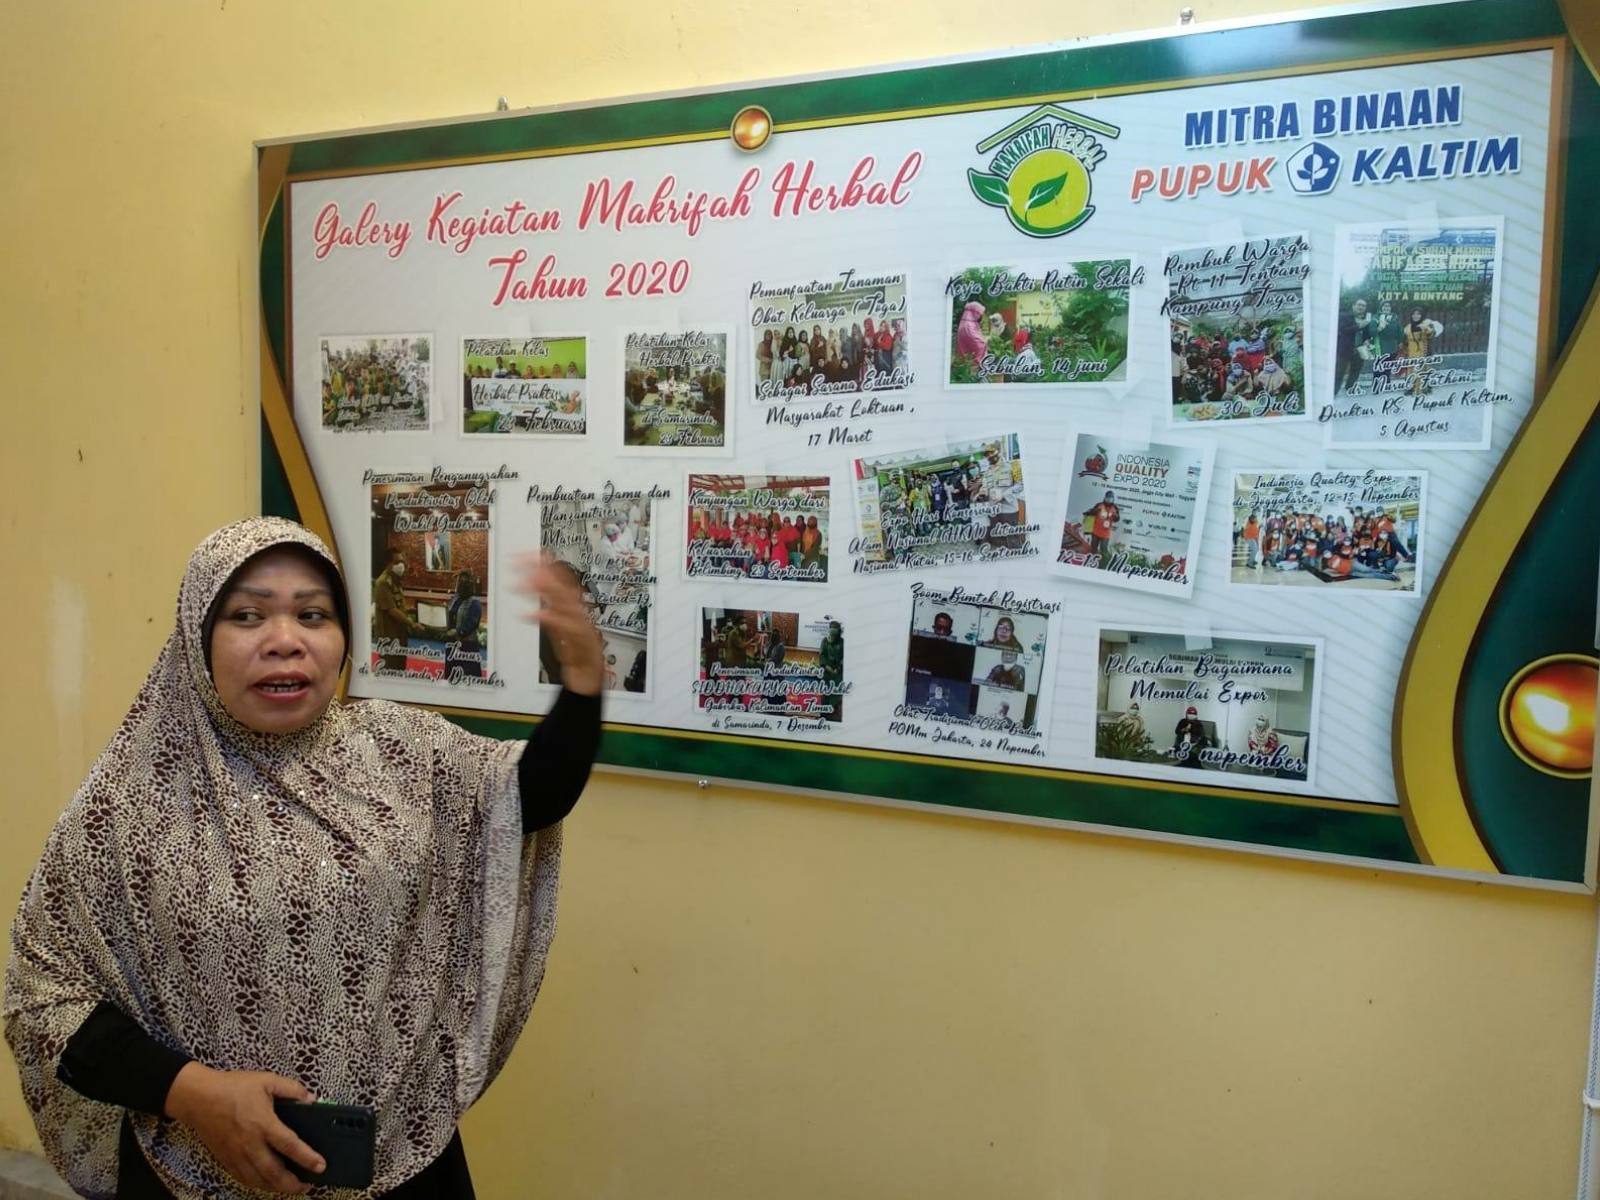 Guru di Loktuan Ini Produksi Minyak Gosok Herbal, Dipasarkan ke 32 Daerah